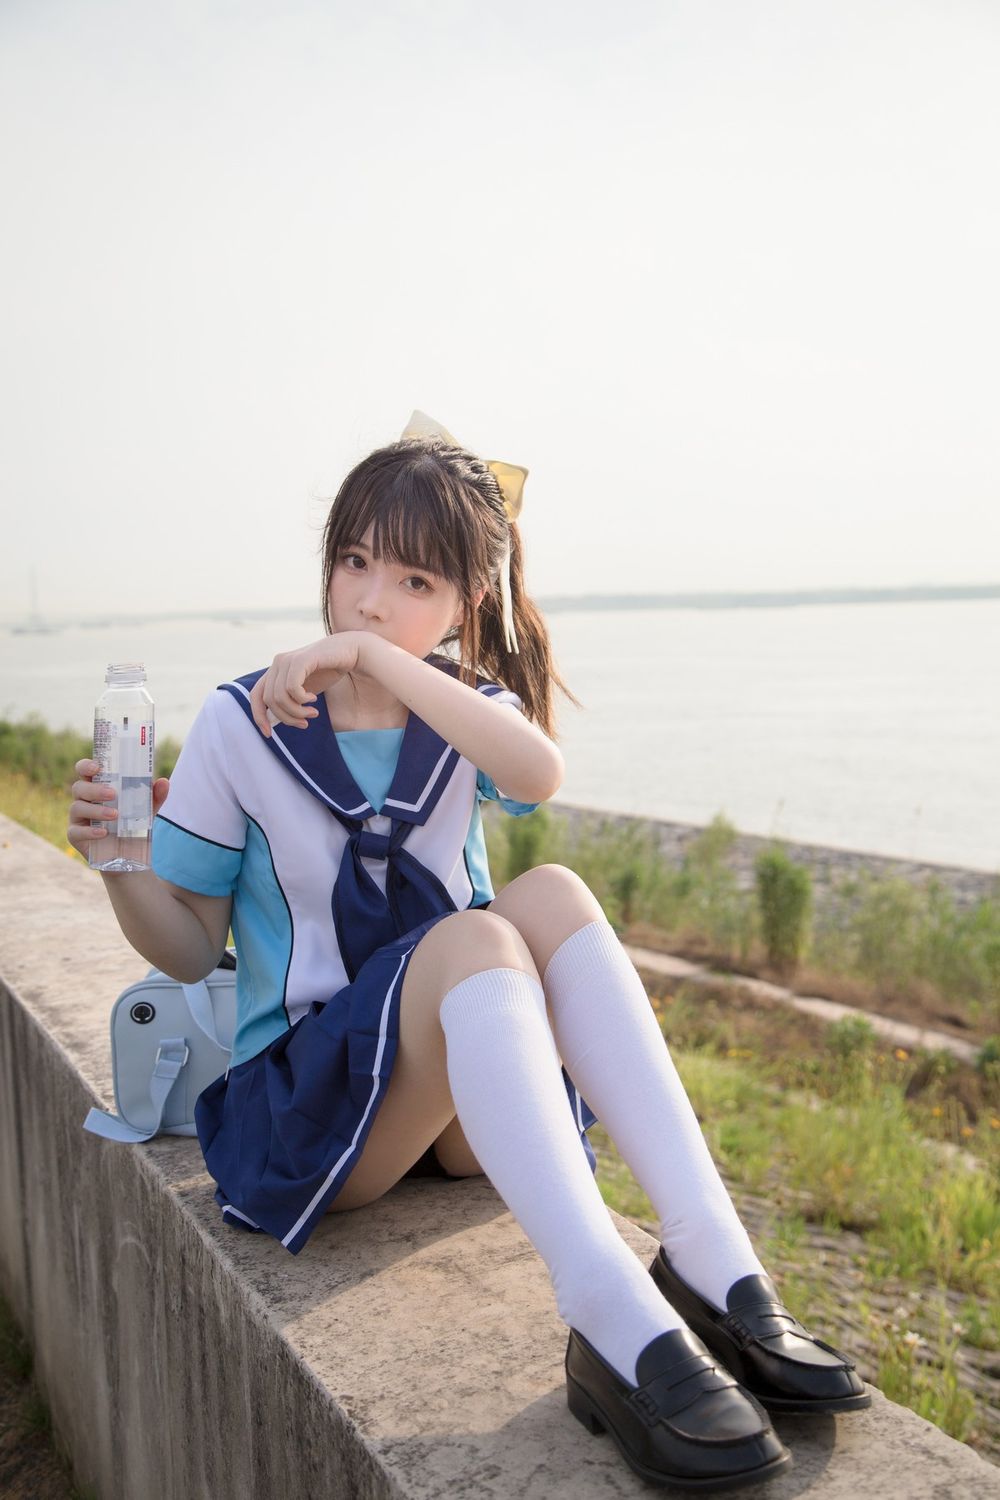 微博妹子Fushii海堂学生制服配白丝袜写真